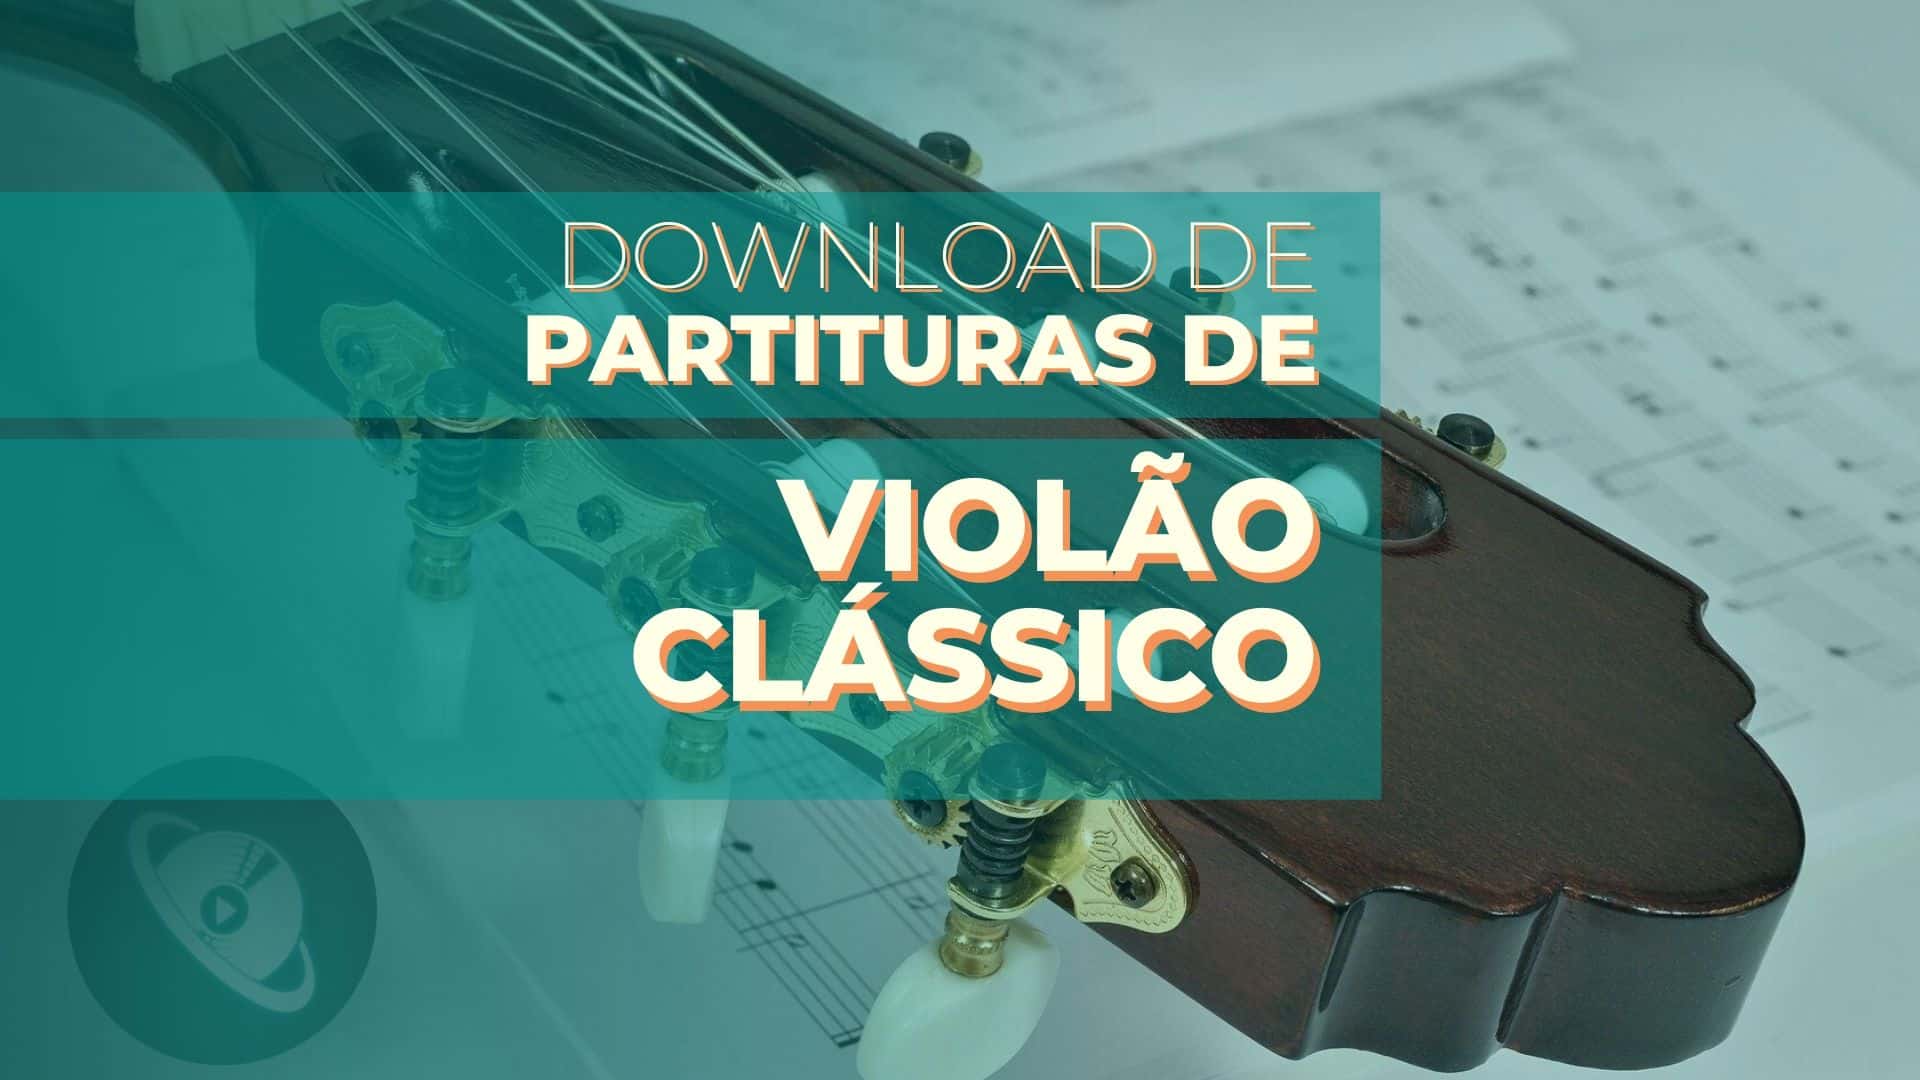 Partituras para violão clássico – Download Gratuito!